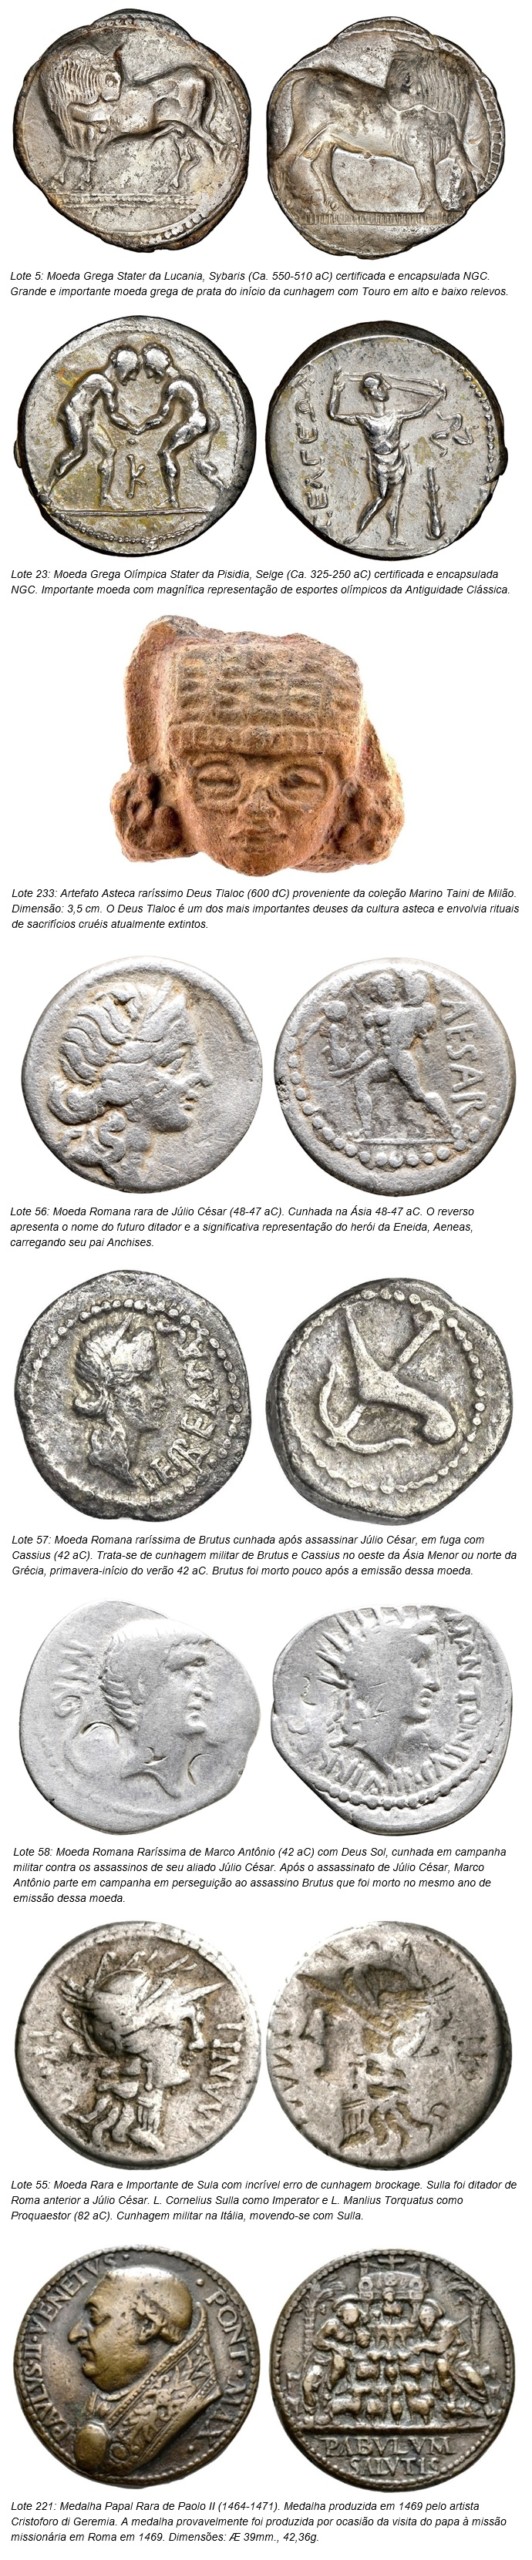 מכירה פומבית של פלביה קרדוסו סוארס: 5º מטבעות קונאטוס מכירה של מטבעות וחפצים מהעת העתיקה הקלאסית (יווני, רומאים וביזנטים), מדגיש. גילוי.